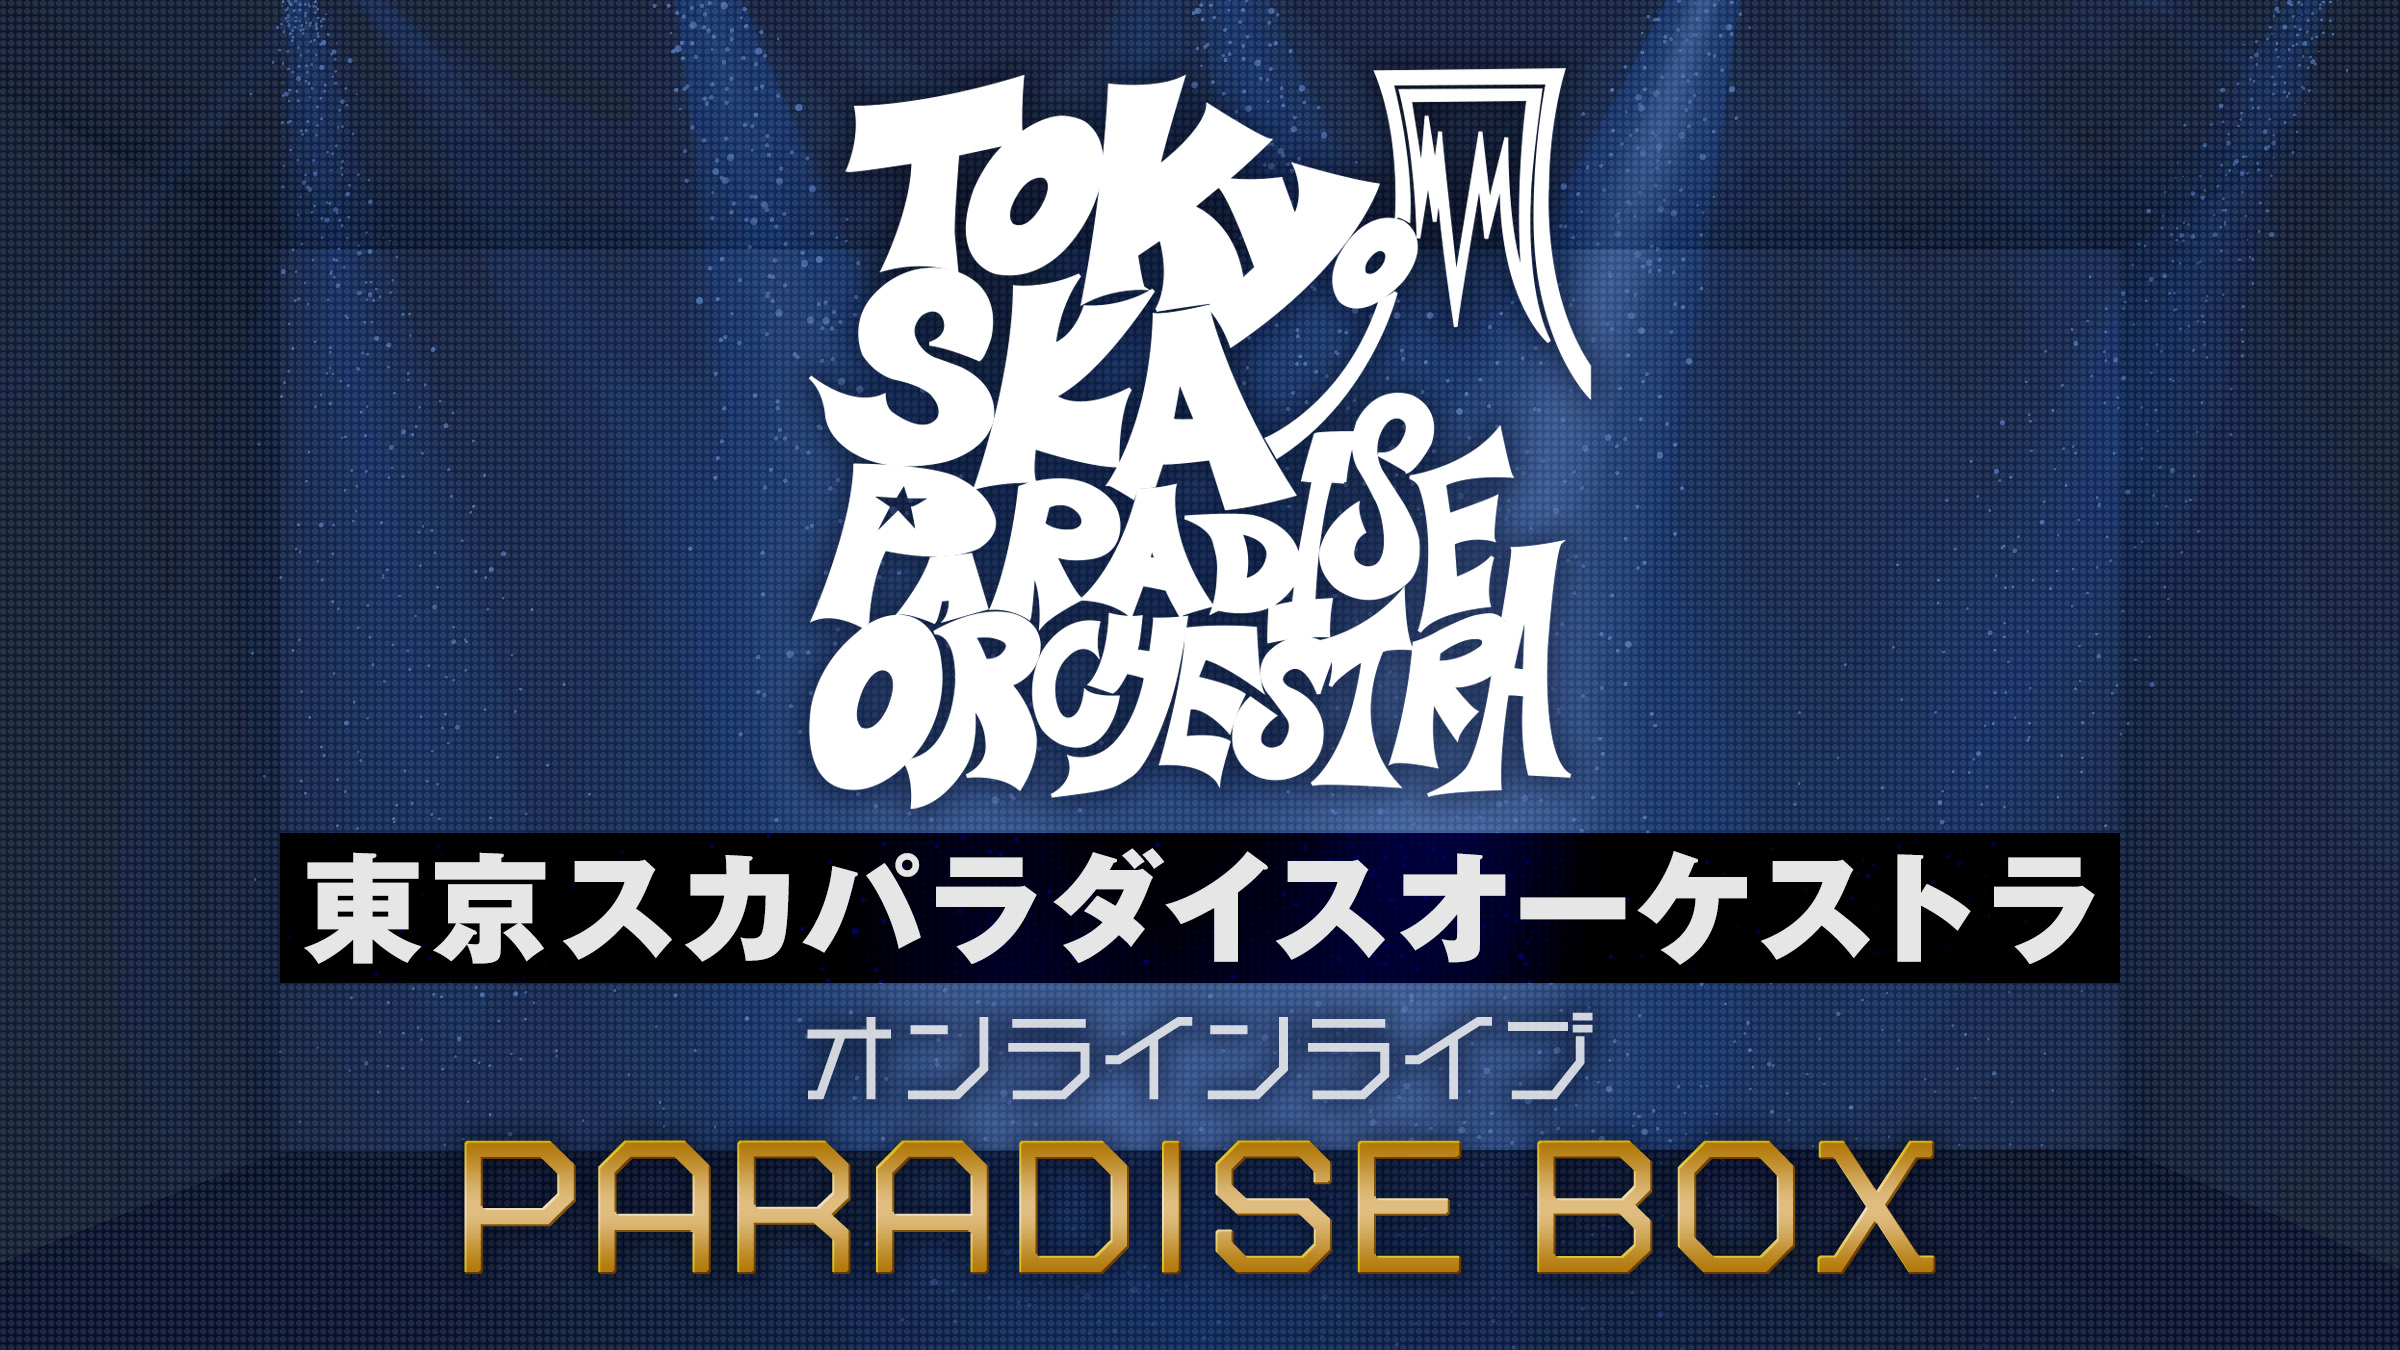 東京スカパラダイスオーケストラ オンラインライブ「PARADISE BOX」